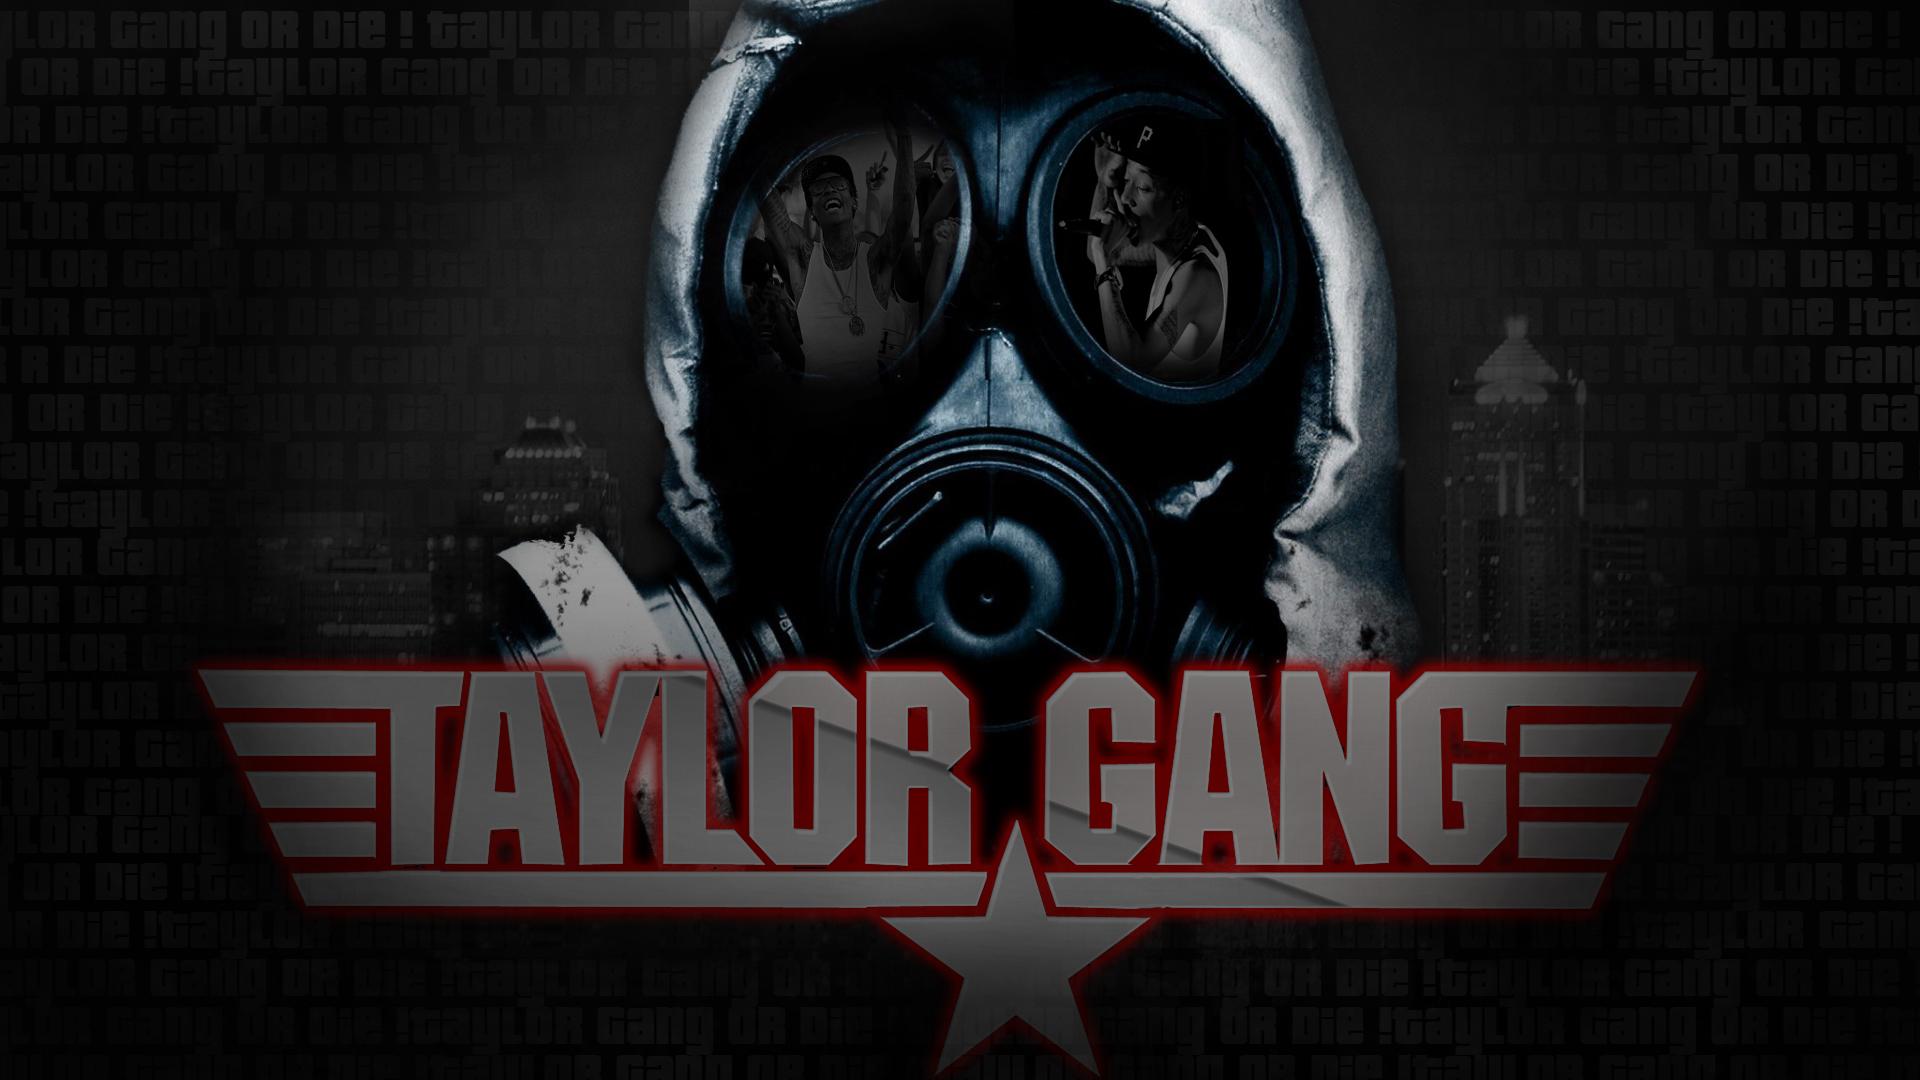 Pin Taylor gang